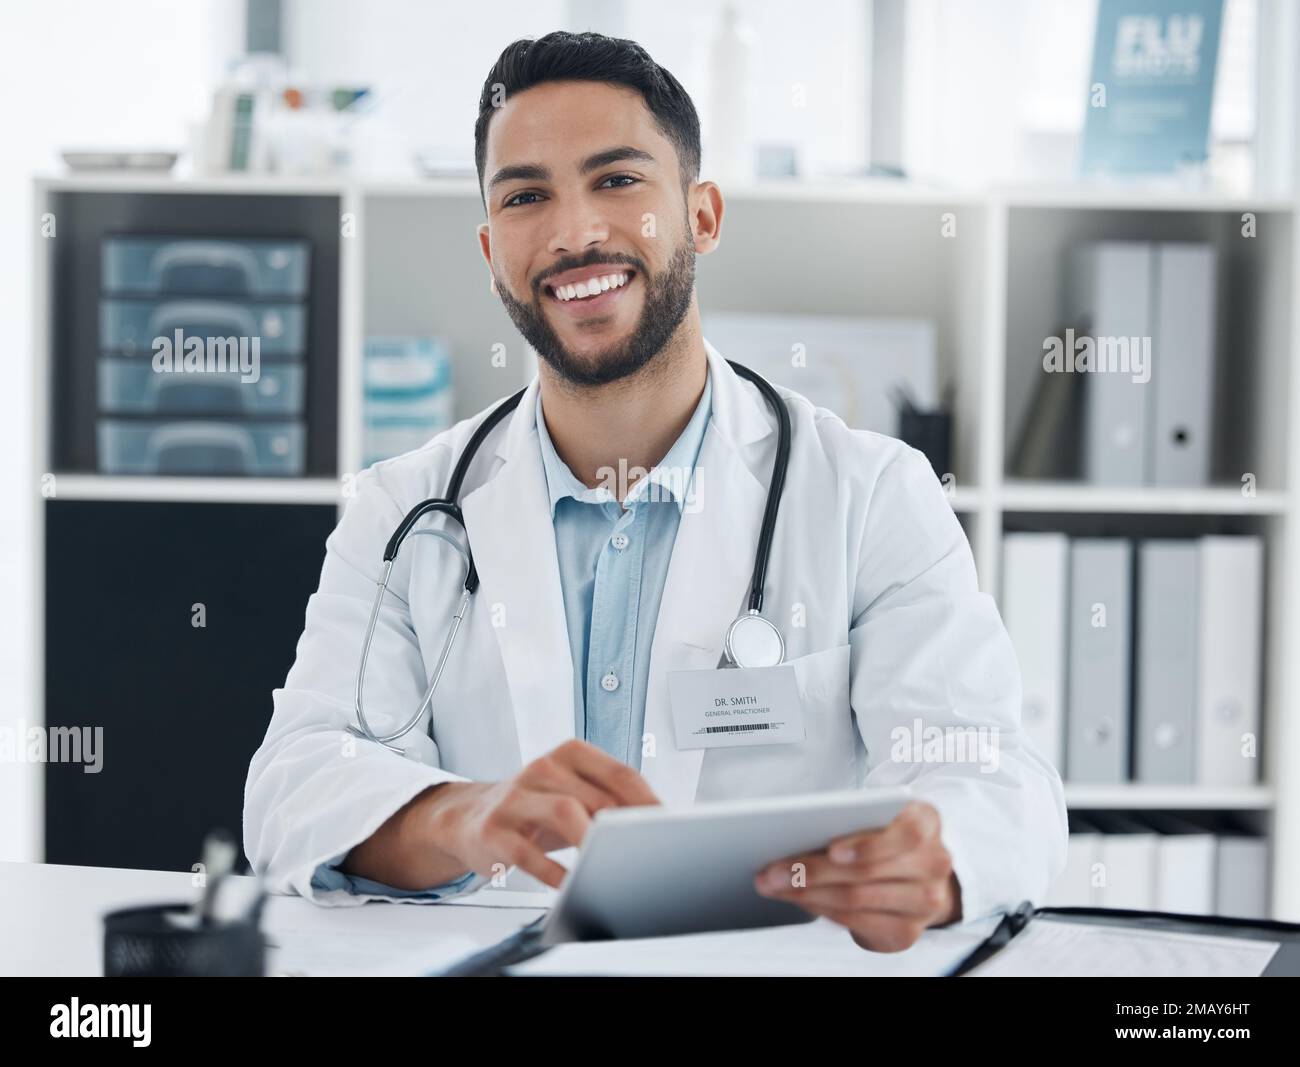 Votre sympathique généraliste de quartier. un jeune médecin utilisant une tablette numérique dans un bureau. Banque D'Images